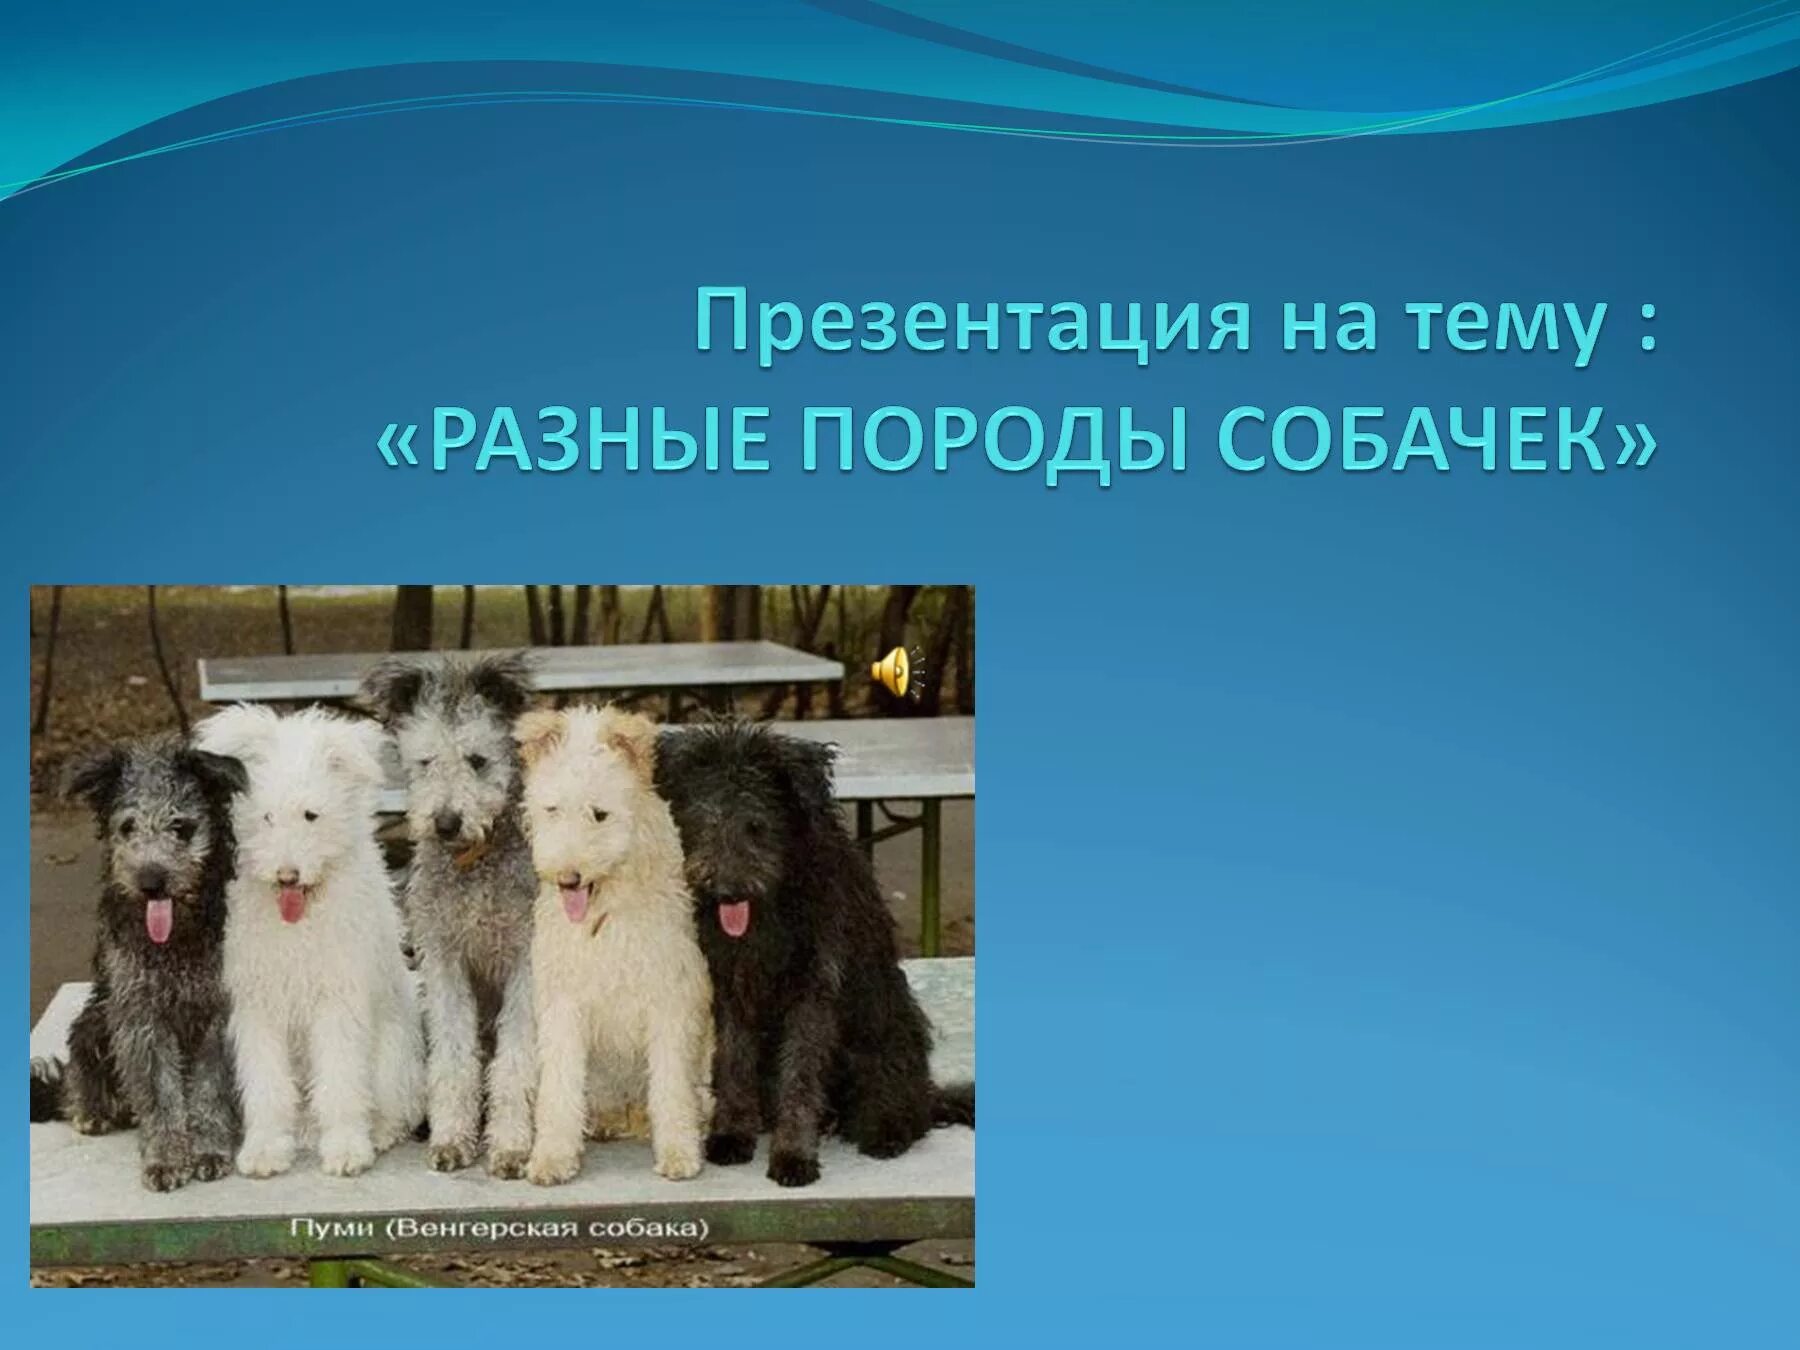 Песня мы разной породы. Породы собак презентация. Презентация на тему собаки. Собака для презентации. Презентация разные породы собак.